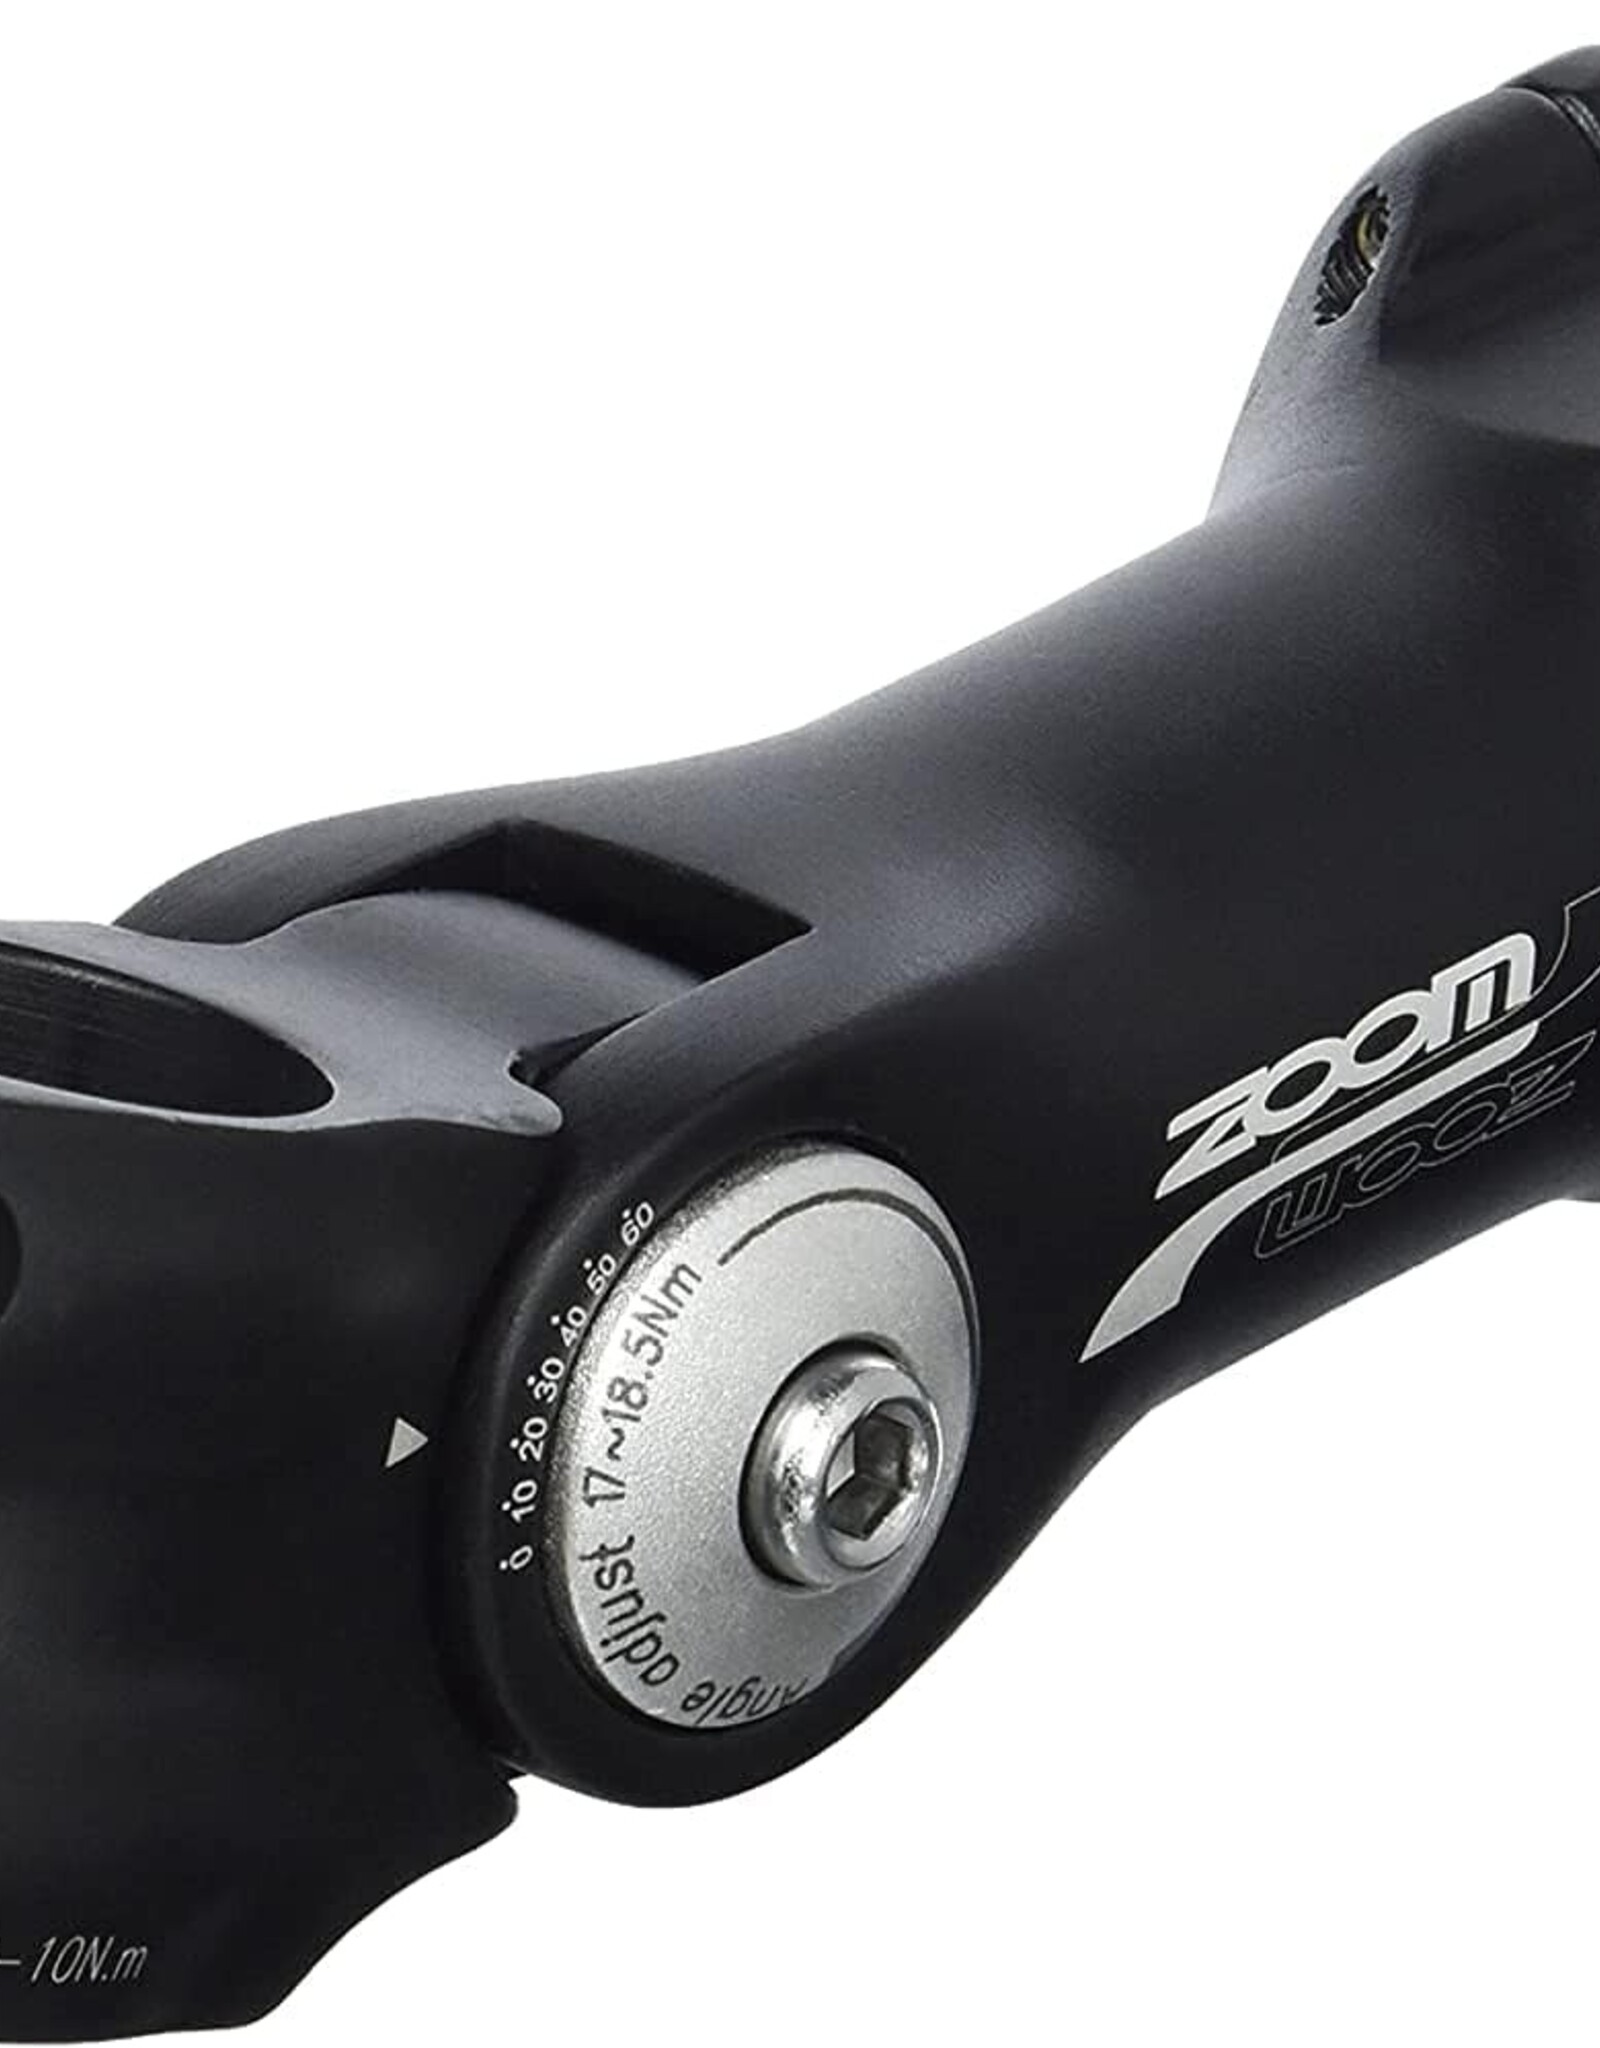 Zoom TDS-C297 Stem - 125mm, 25.4 Clamp, Adjustable, 1 1/8", Aluminum, Black